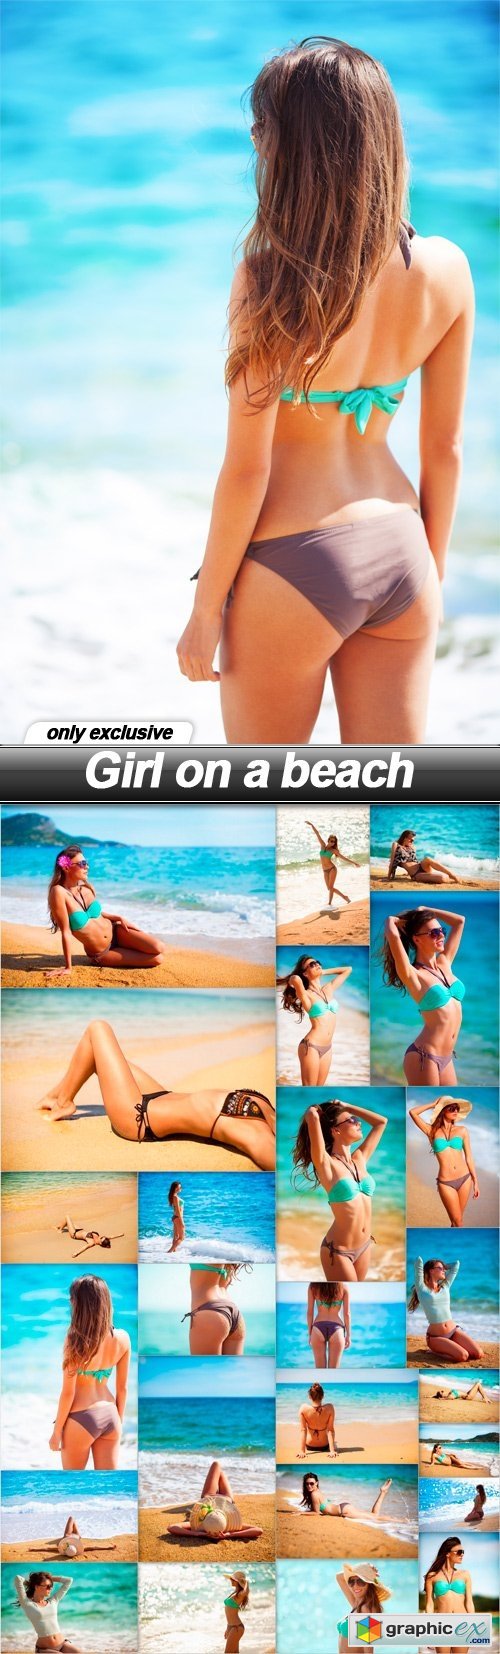 Girl on a beach - 25 UHQ JPEG